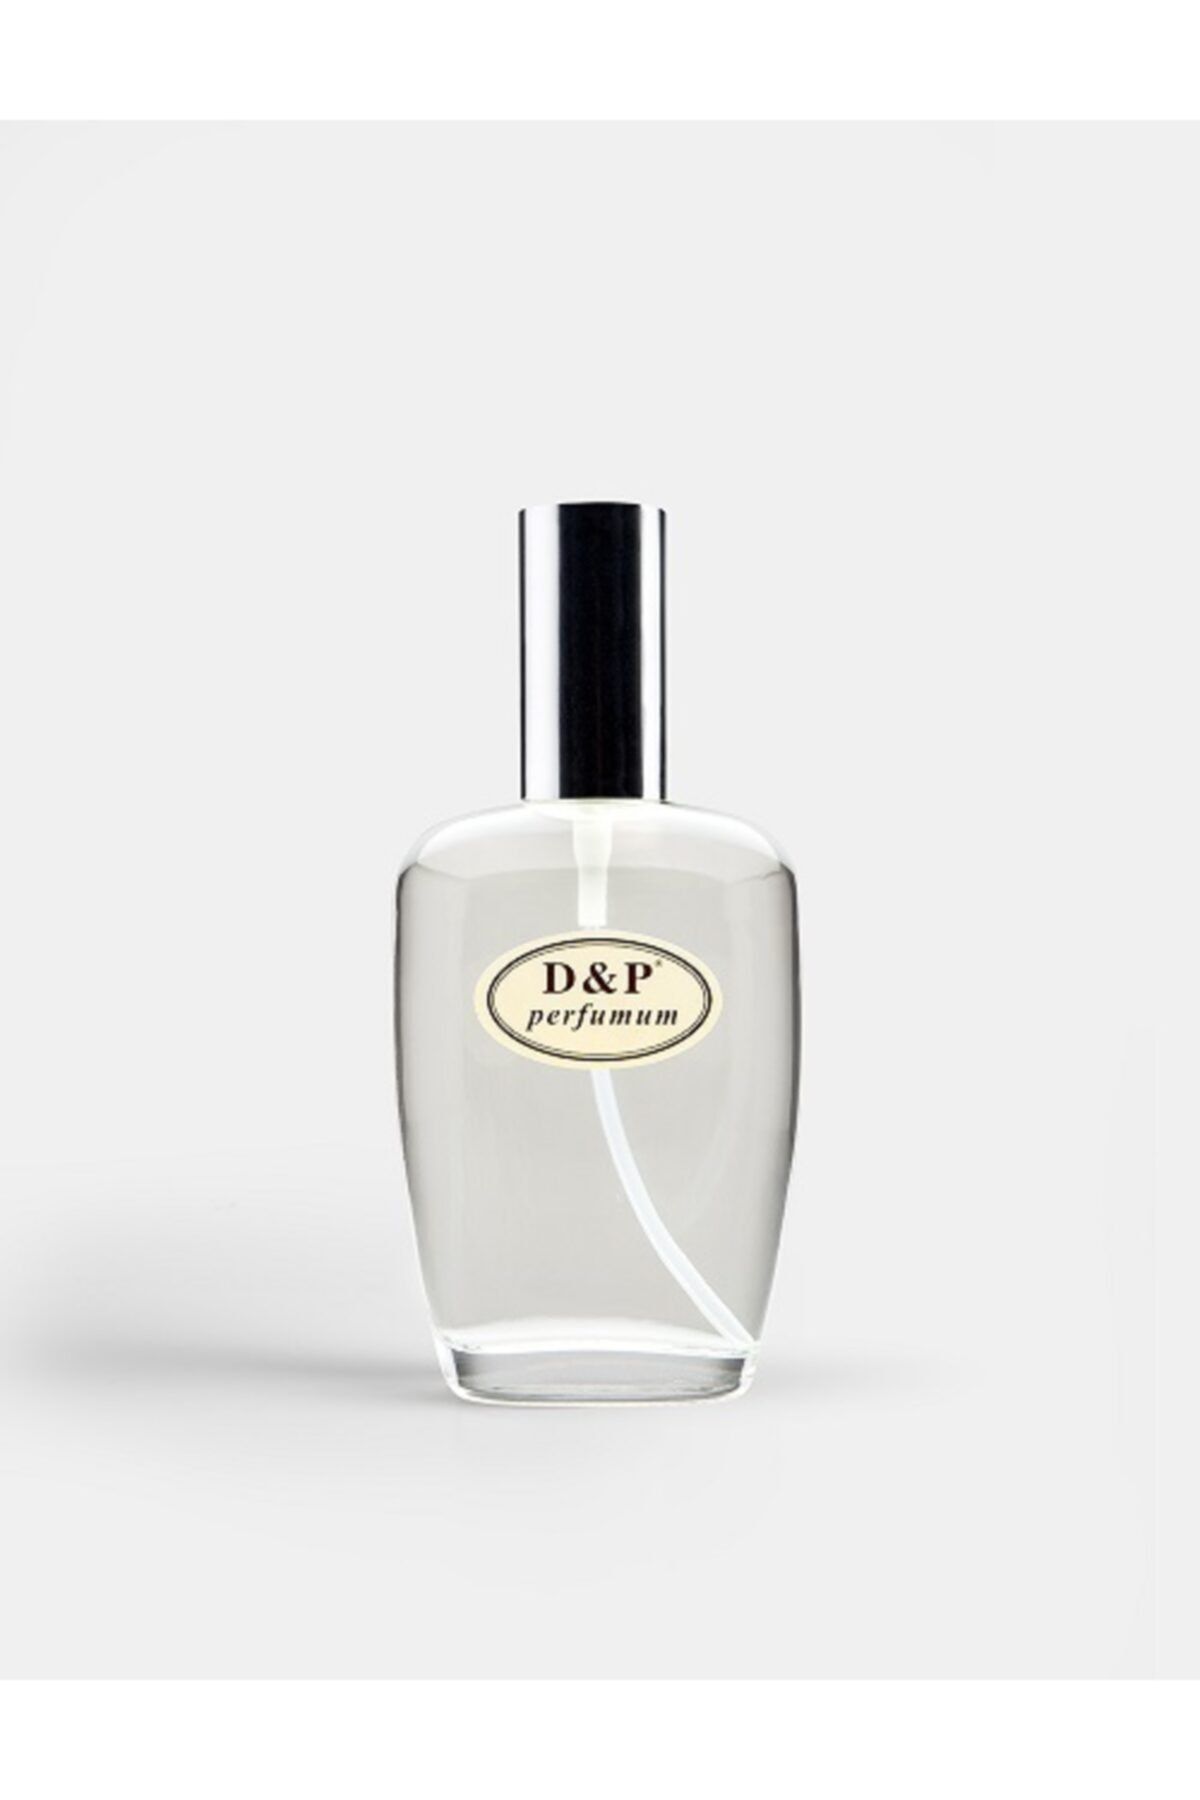 D&P Perfumum B6 Kadın Parfüm 100 ml